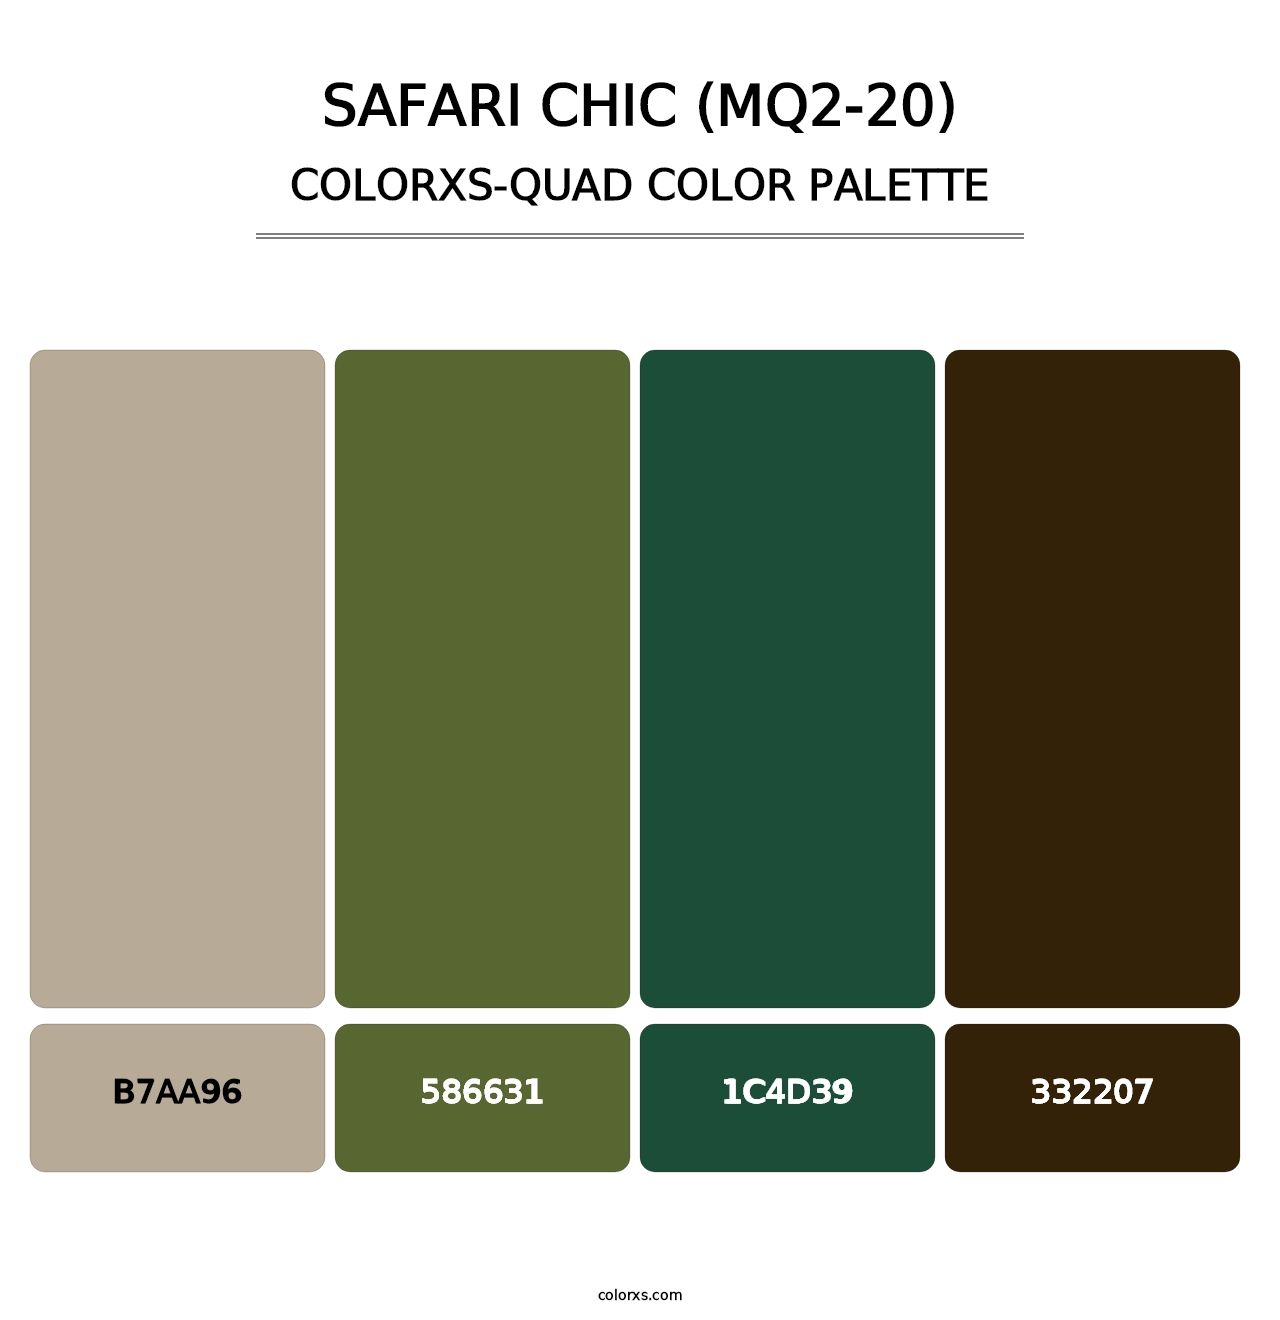 Safari Chic (MQ2-20) - Colorxs Quad Palette